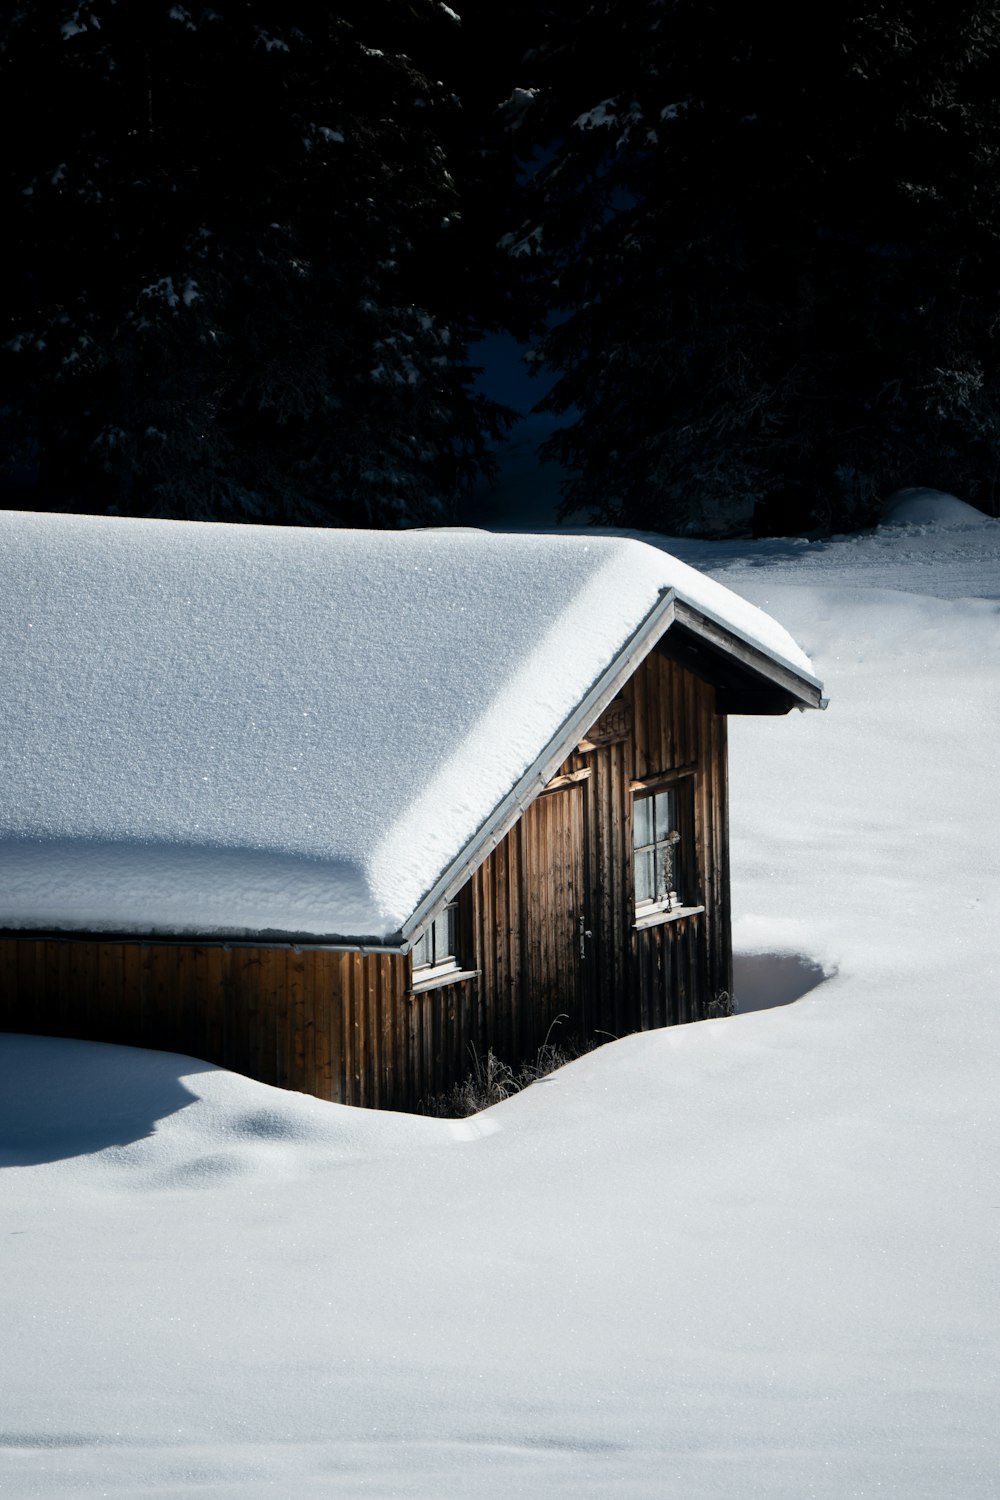 Una pequeña cabaña en medio de un campo nevado